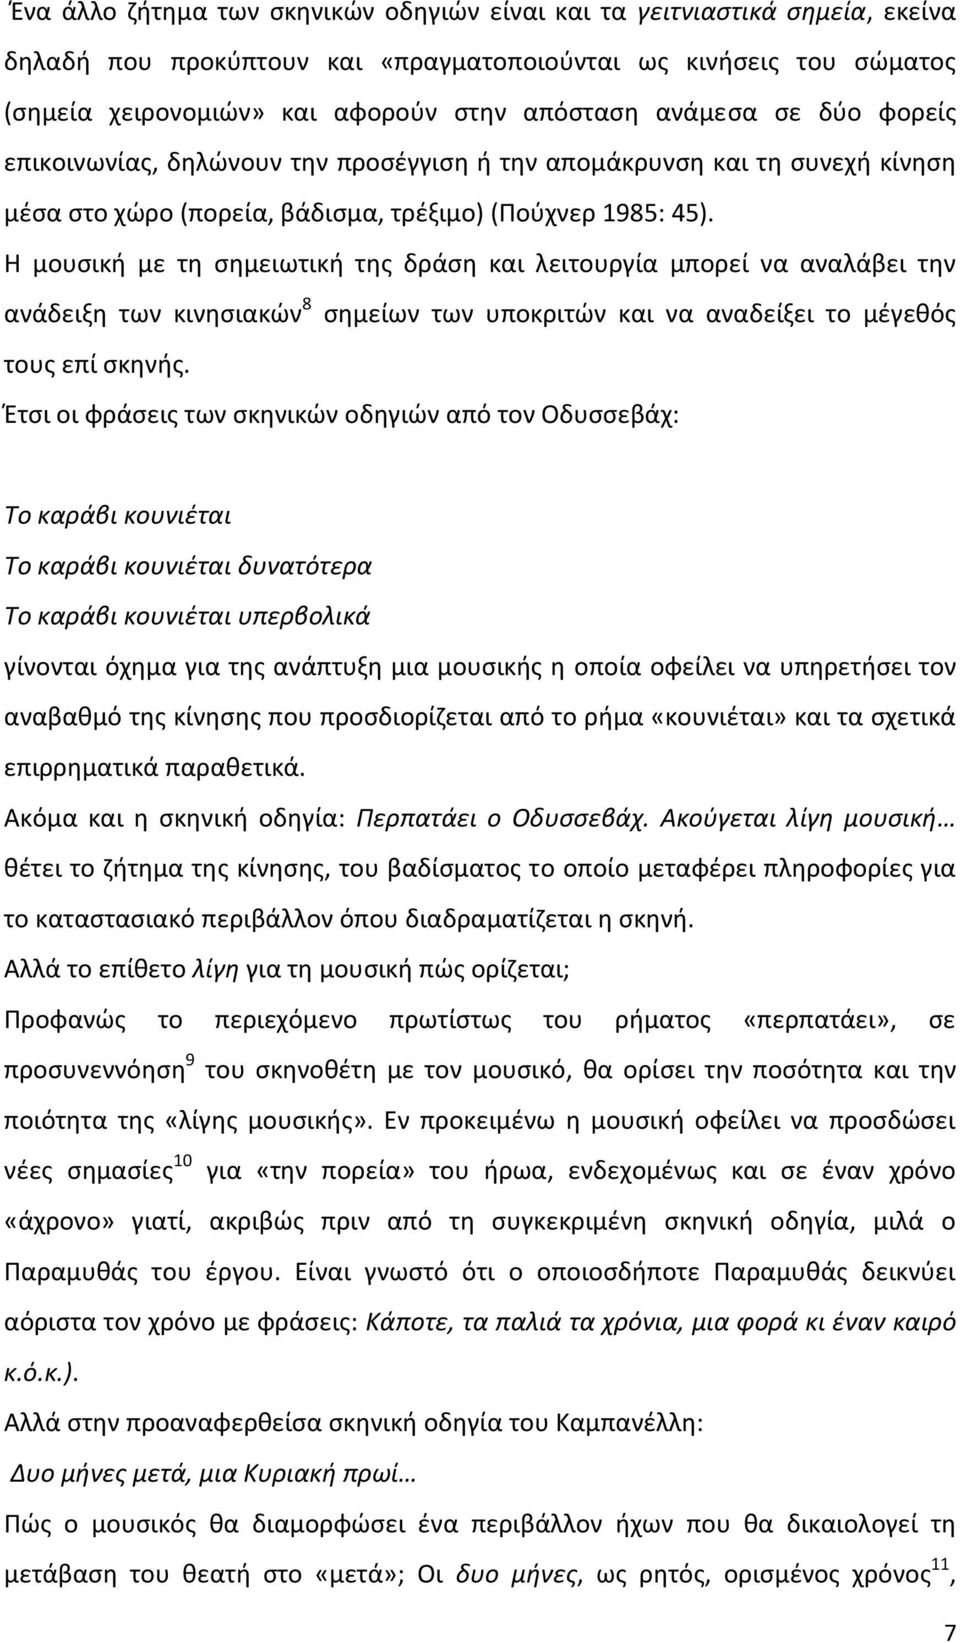 Οι σκηνικές οδηγίες του δραματικού κειμένου και η ανάπτυξη του μουσικού  σημείου Βασίλης Πανόπουλος Υποψήφιος Διδάκτωρ του Πανεπιστημίου Αθηνών -  PDF Free Download